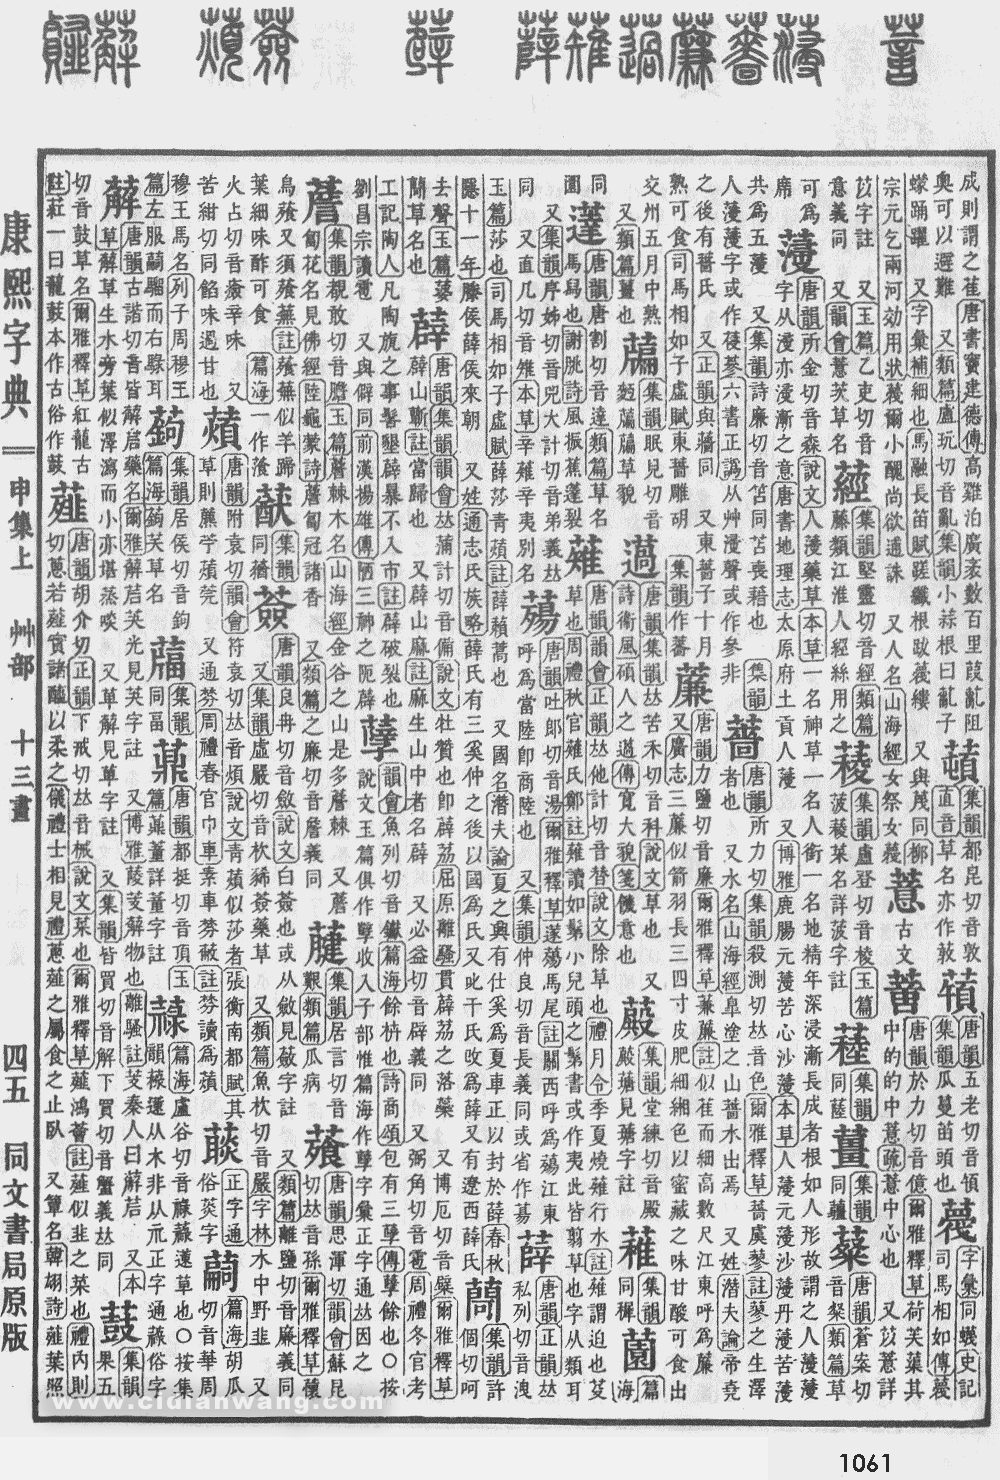 康熙字典掃描版第1061頁